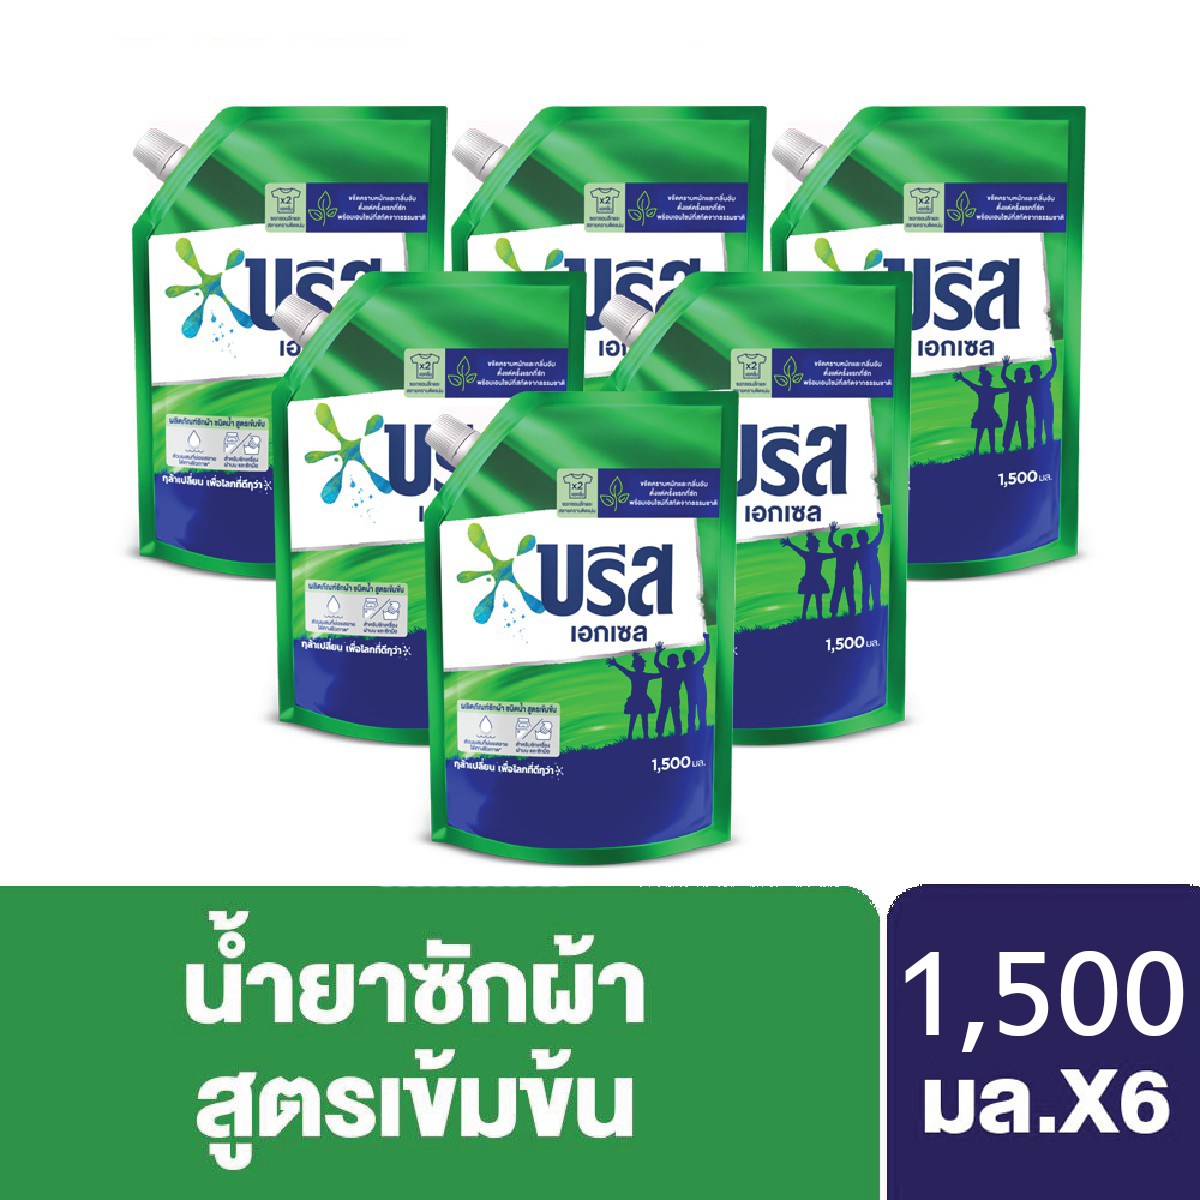 บรีส เอกเซล น้ำยาซักผ้า ขจัดคราบหนัก 1500 มล. X6 Breeze Excel Liquid Detergent 1500 ml. X6 Unilever